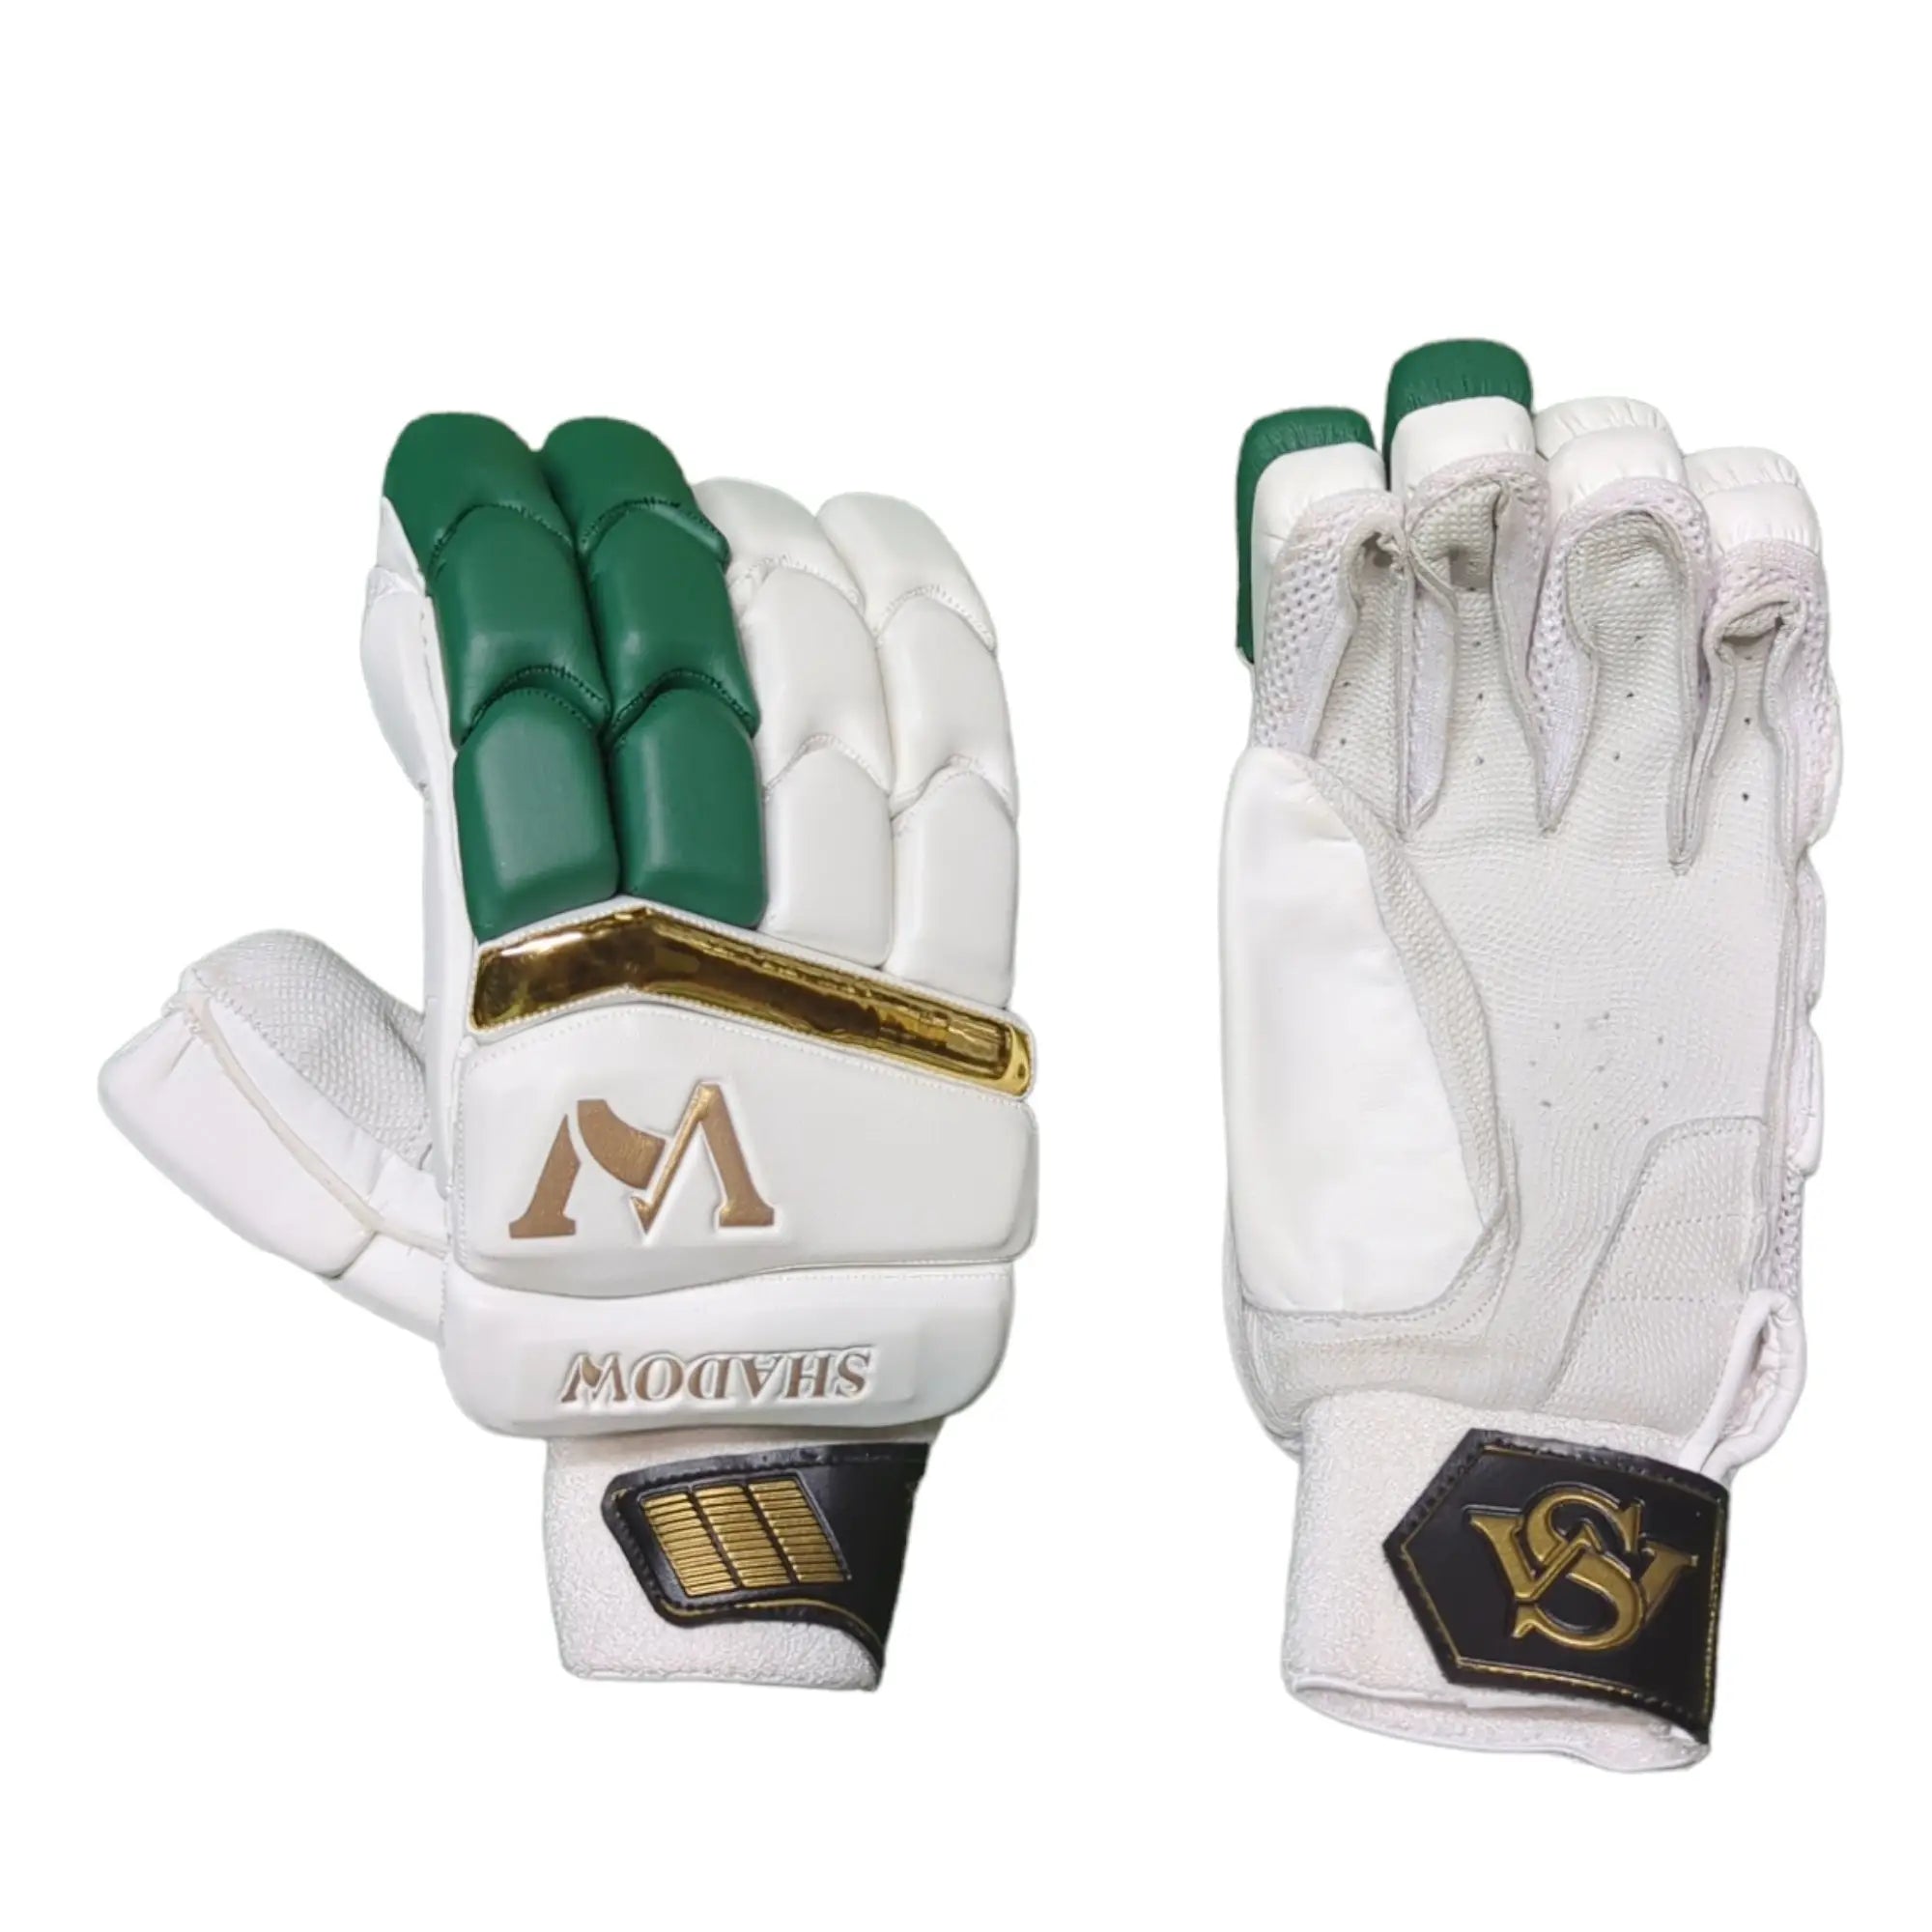 WS Shadow Cricket Gloves White Green - Adult RH - GLOVE - BATTING